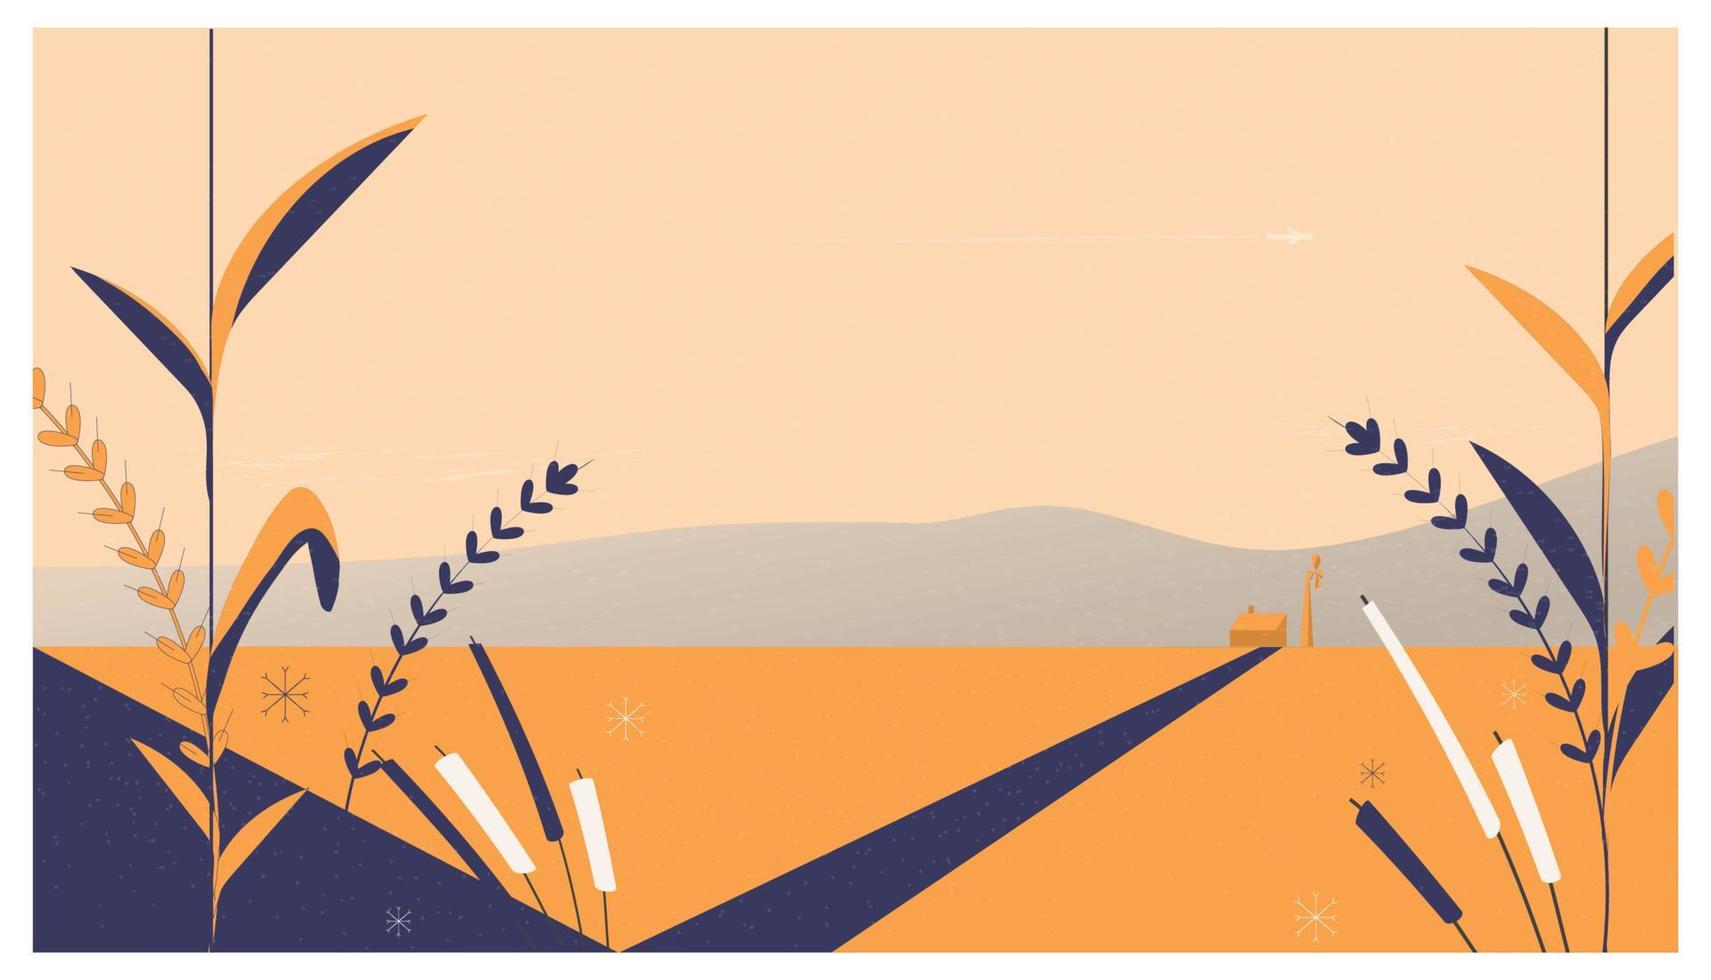 image web du paysage de champ de cultures minimales. grange, moulin à vent, cultures et fleurs sauvages. ton de couleur orange et bleu marine.campagne rurale d'automne paisible. vecteur